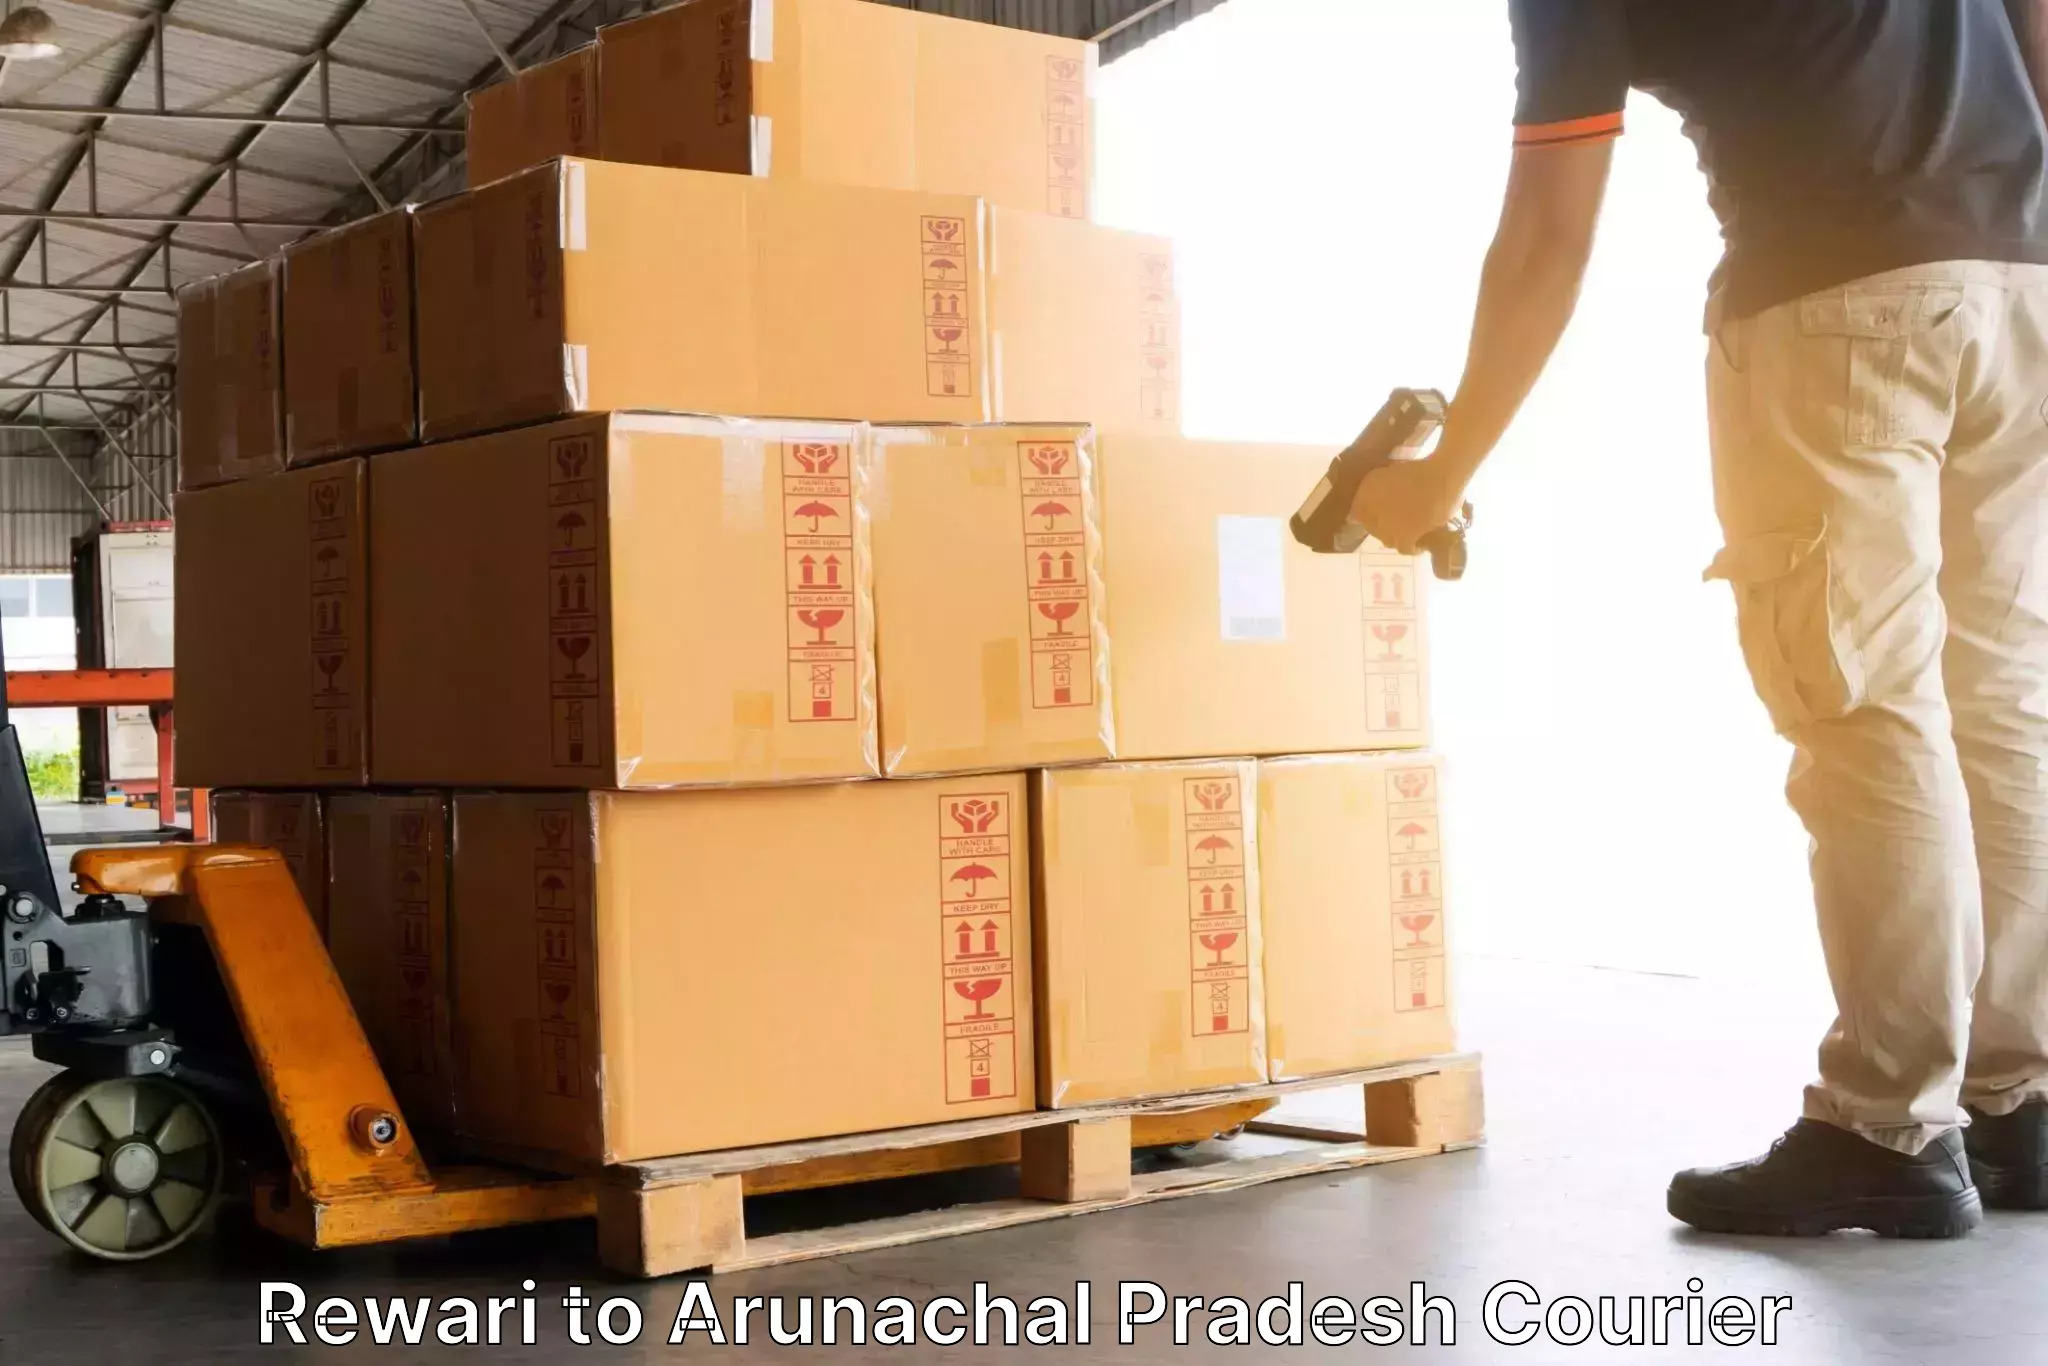 Global shipping networks Rewari to Arunachal Pradesh